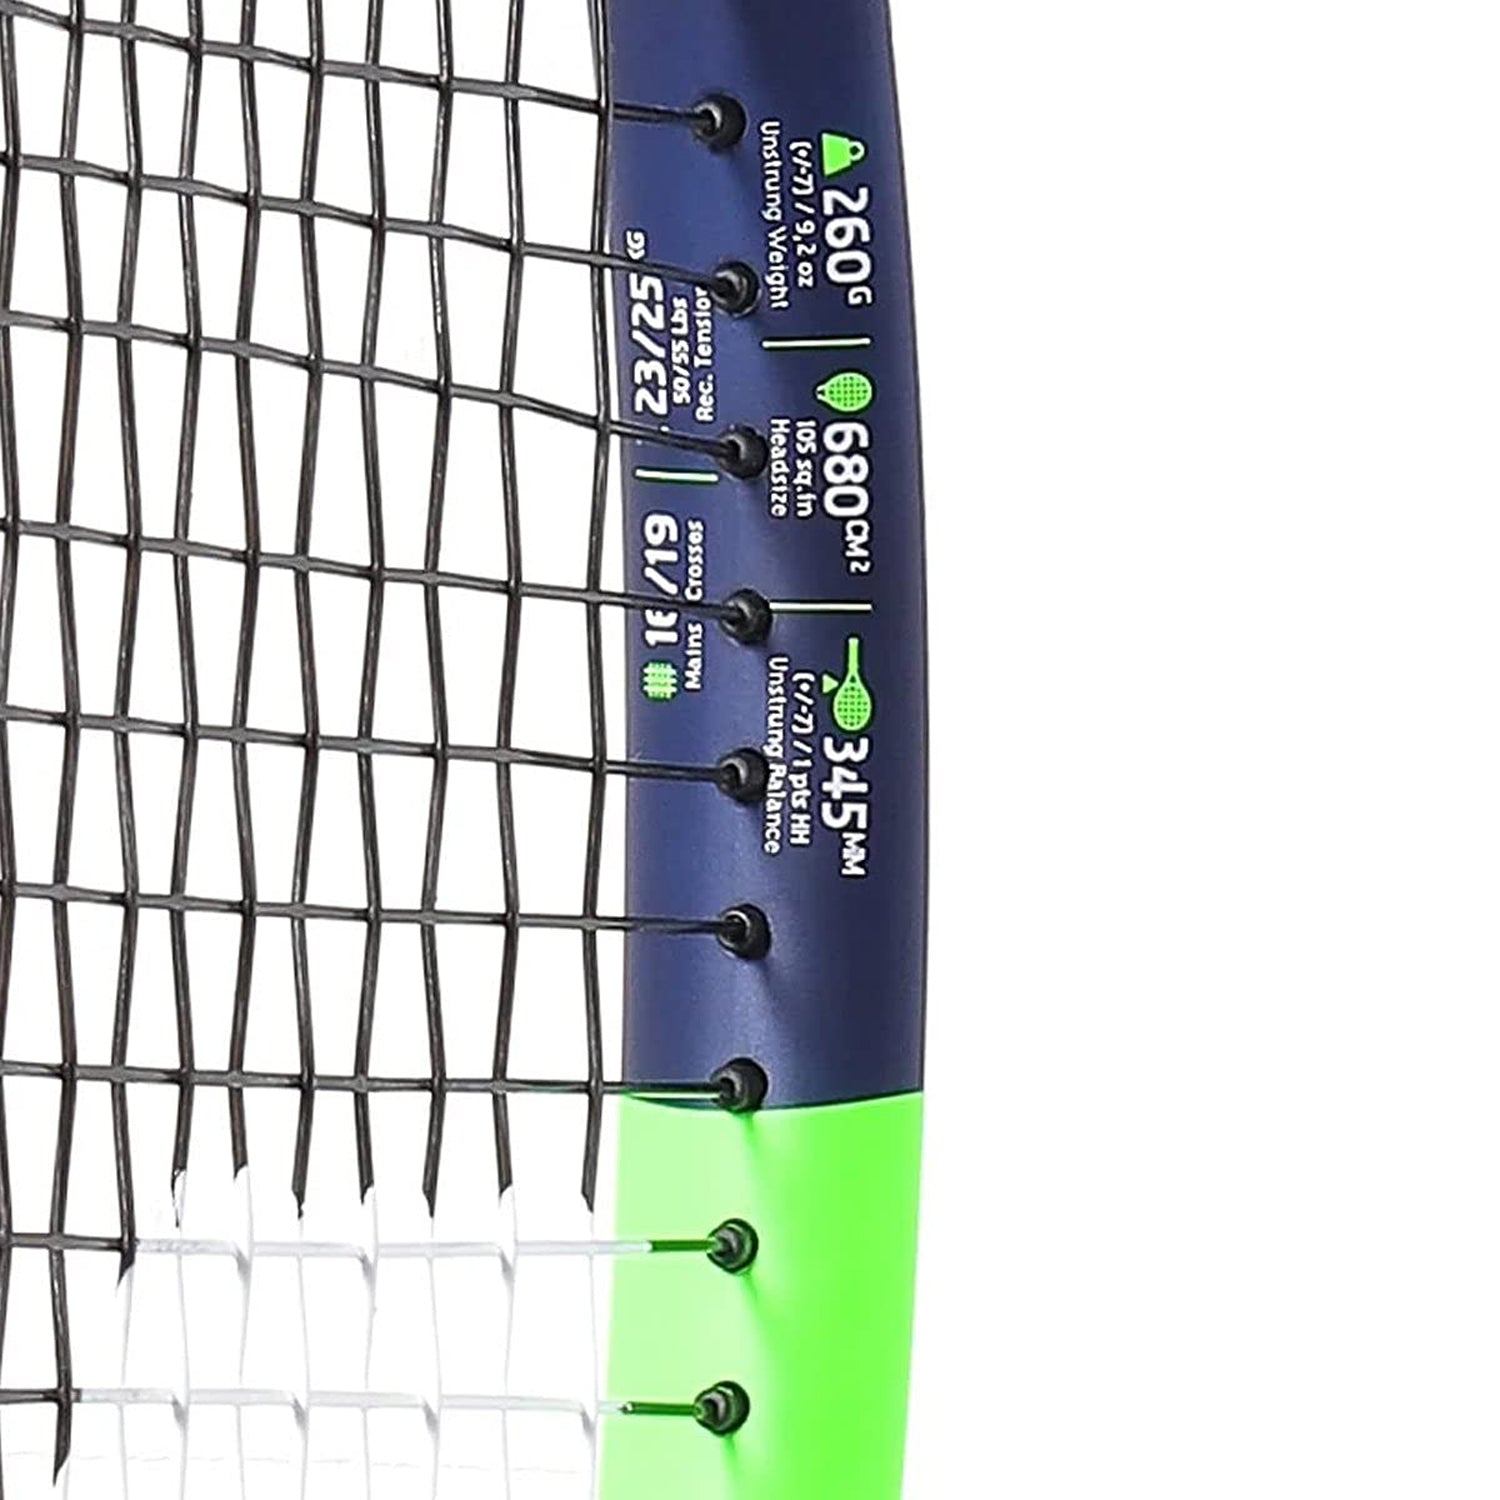 Babolat 121221 Boost Drive Strung Tennis Racquet 4 3/8, Blue/Green/White - Best Price online Prokicksports.com